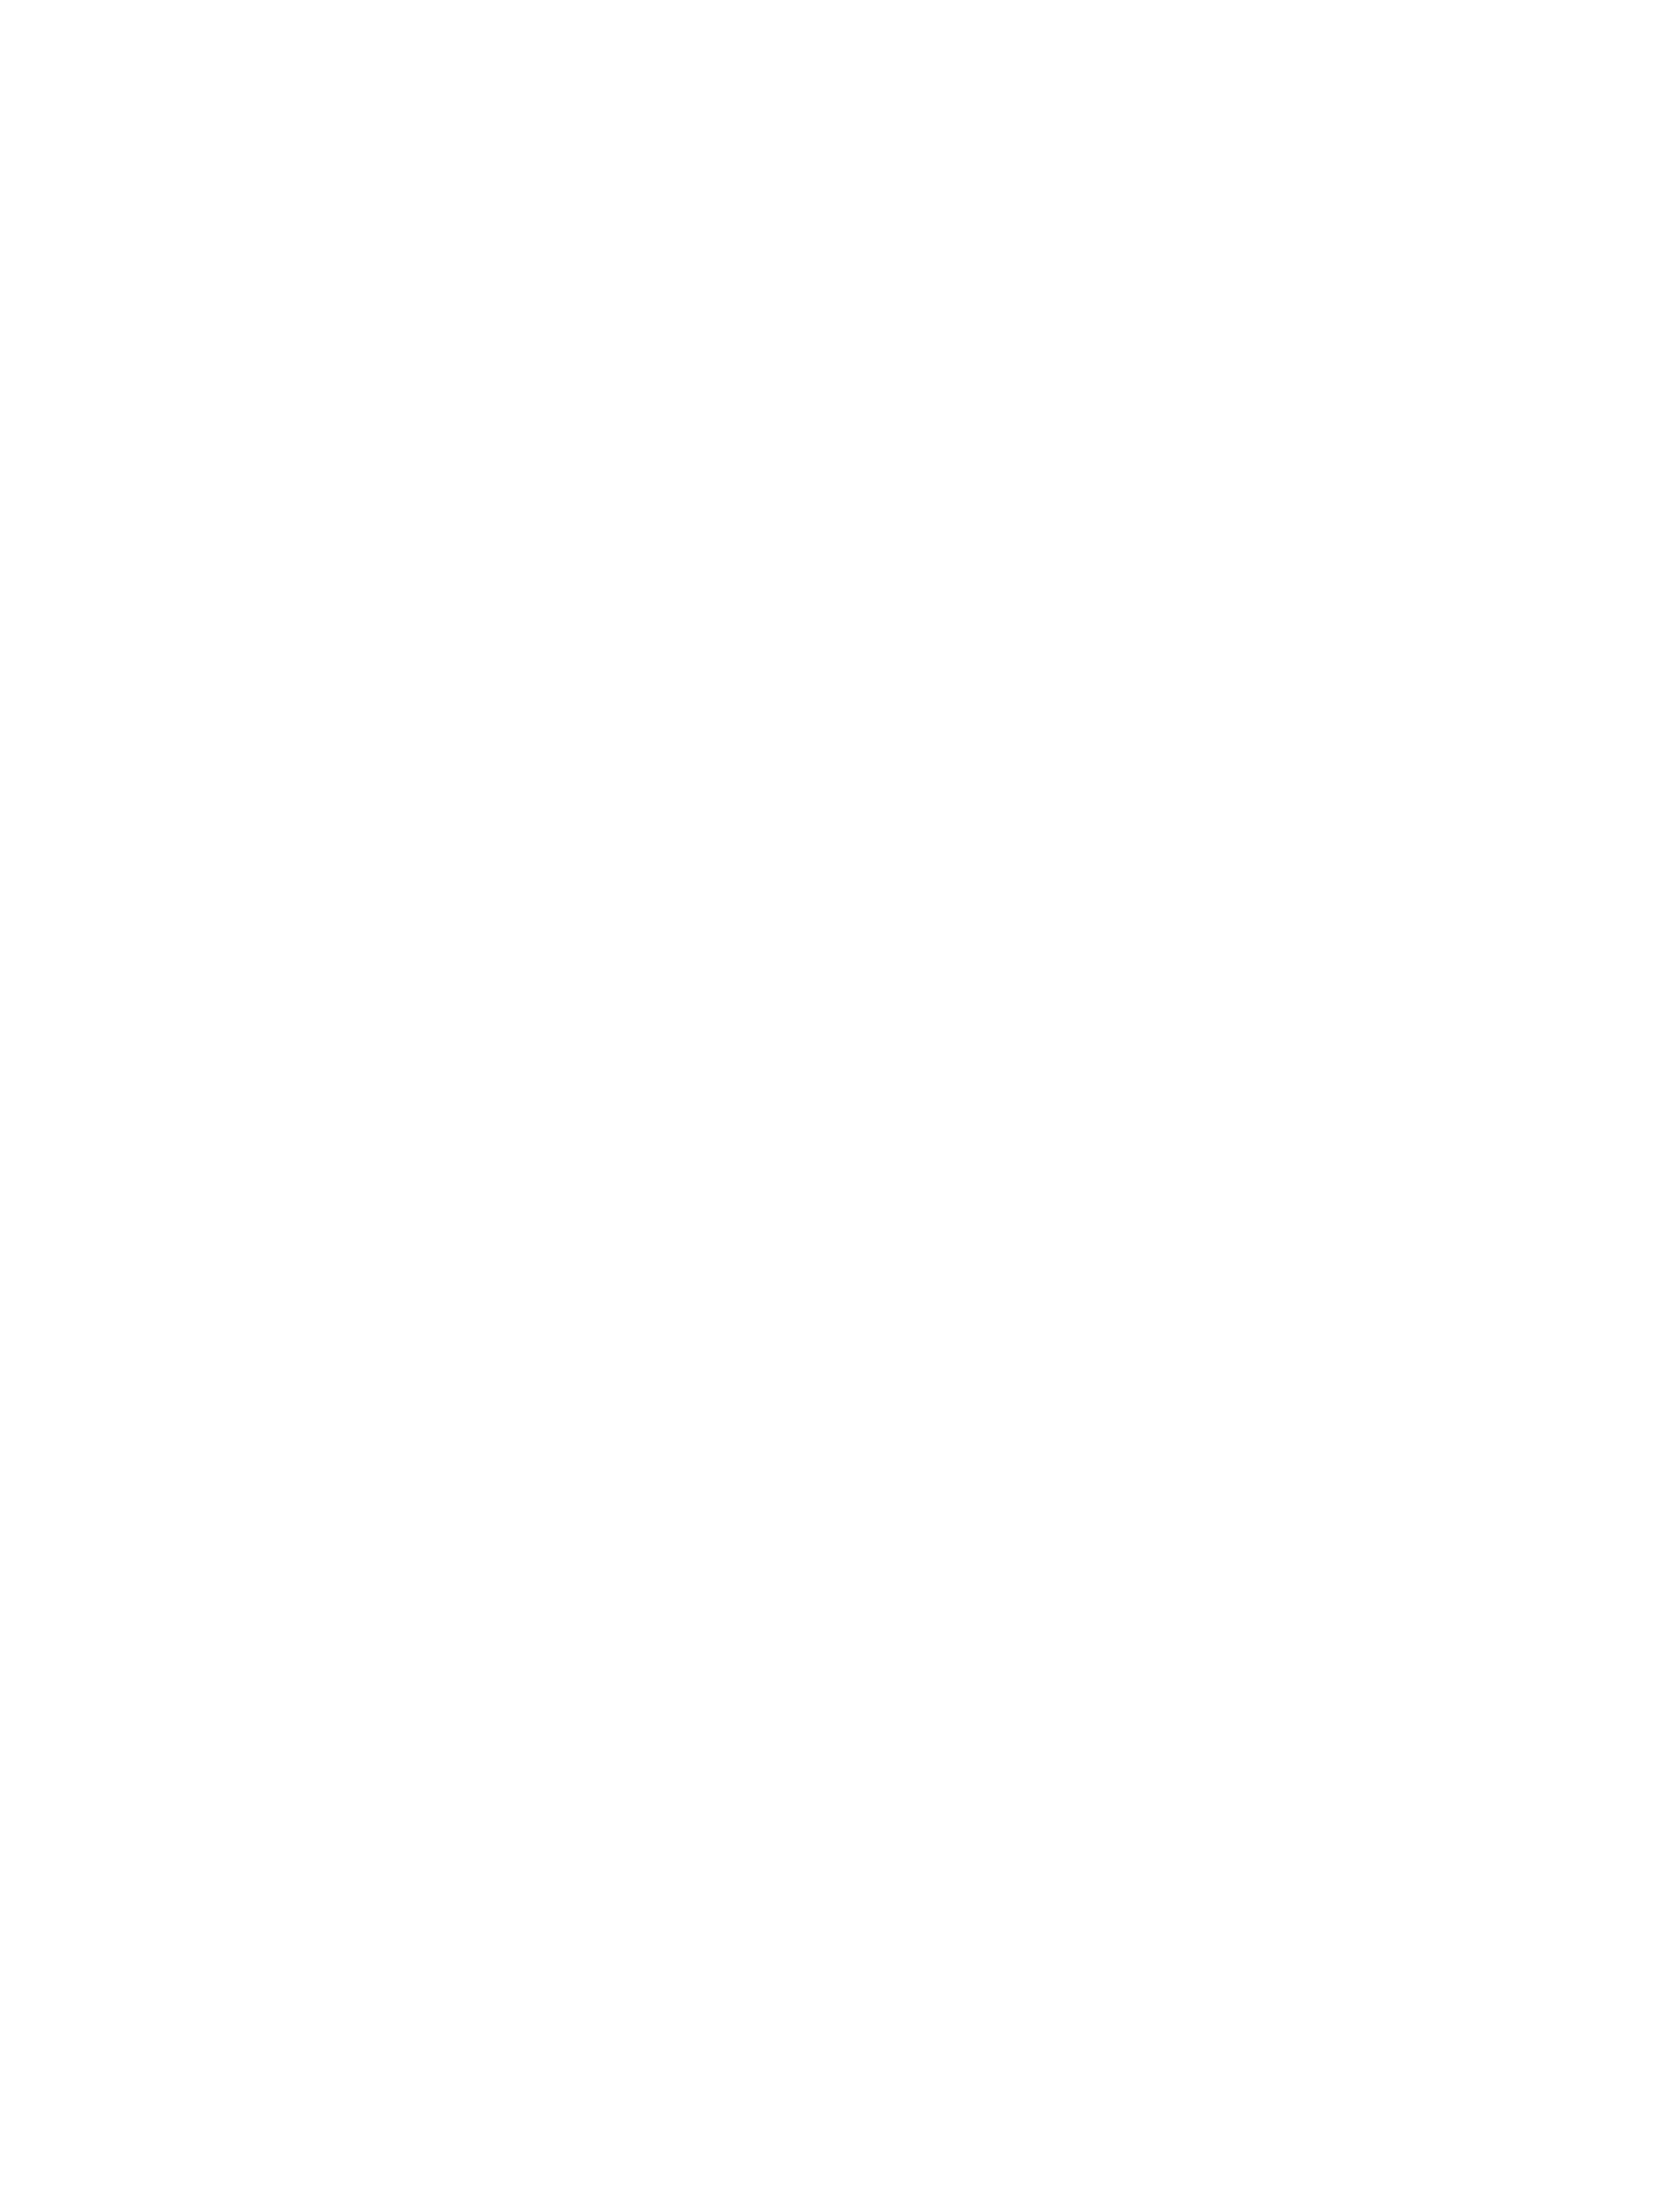 наталья борисовна пехтерева («ассамблея» п. п. гнедича. режиссёр а. и. долинов, художник л. м. браиловский. премьера 26 ноября 1912 г.)